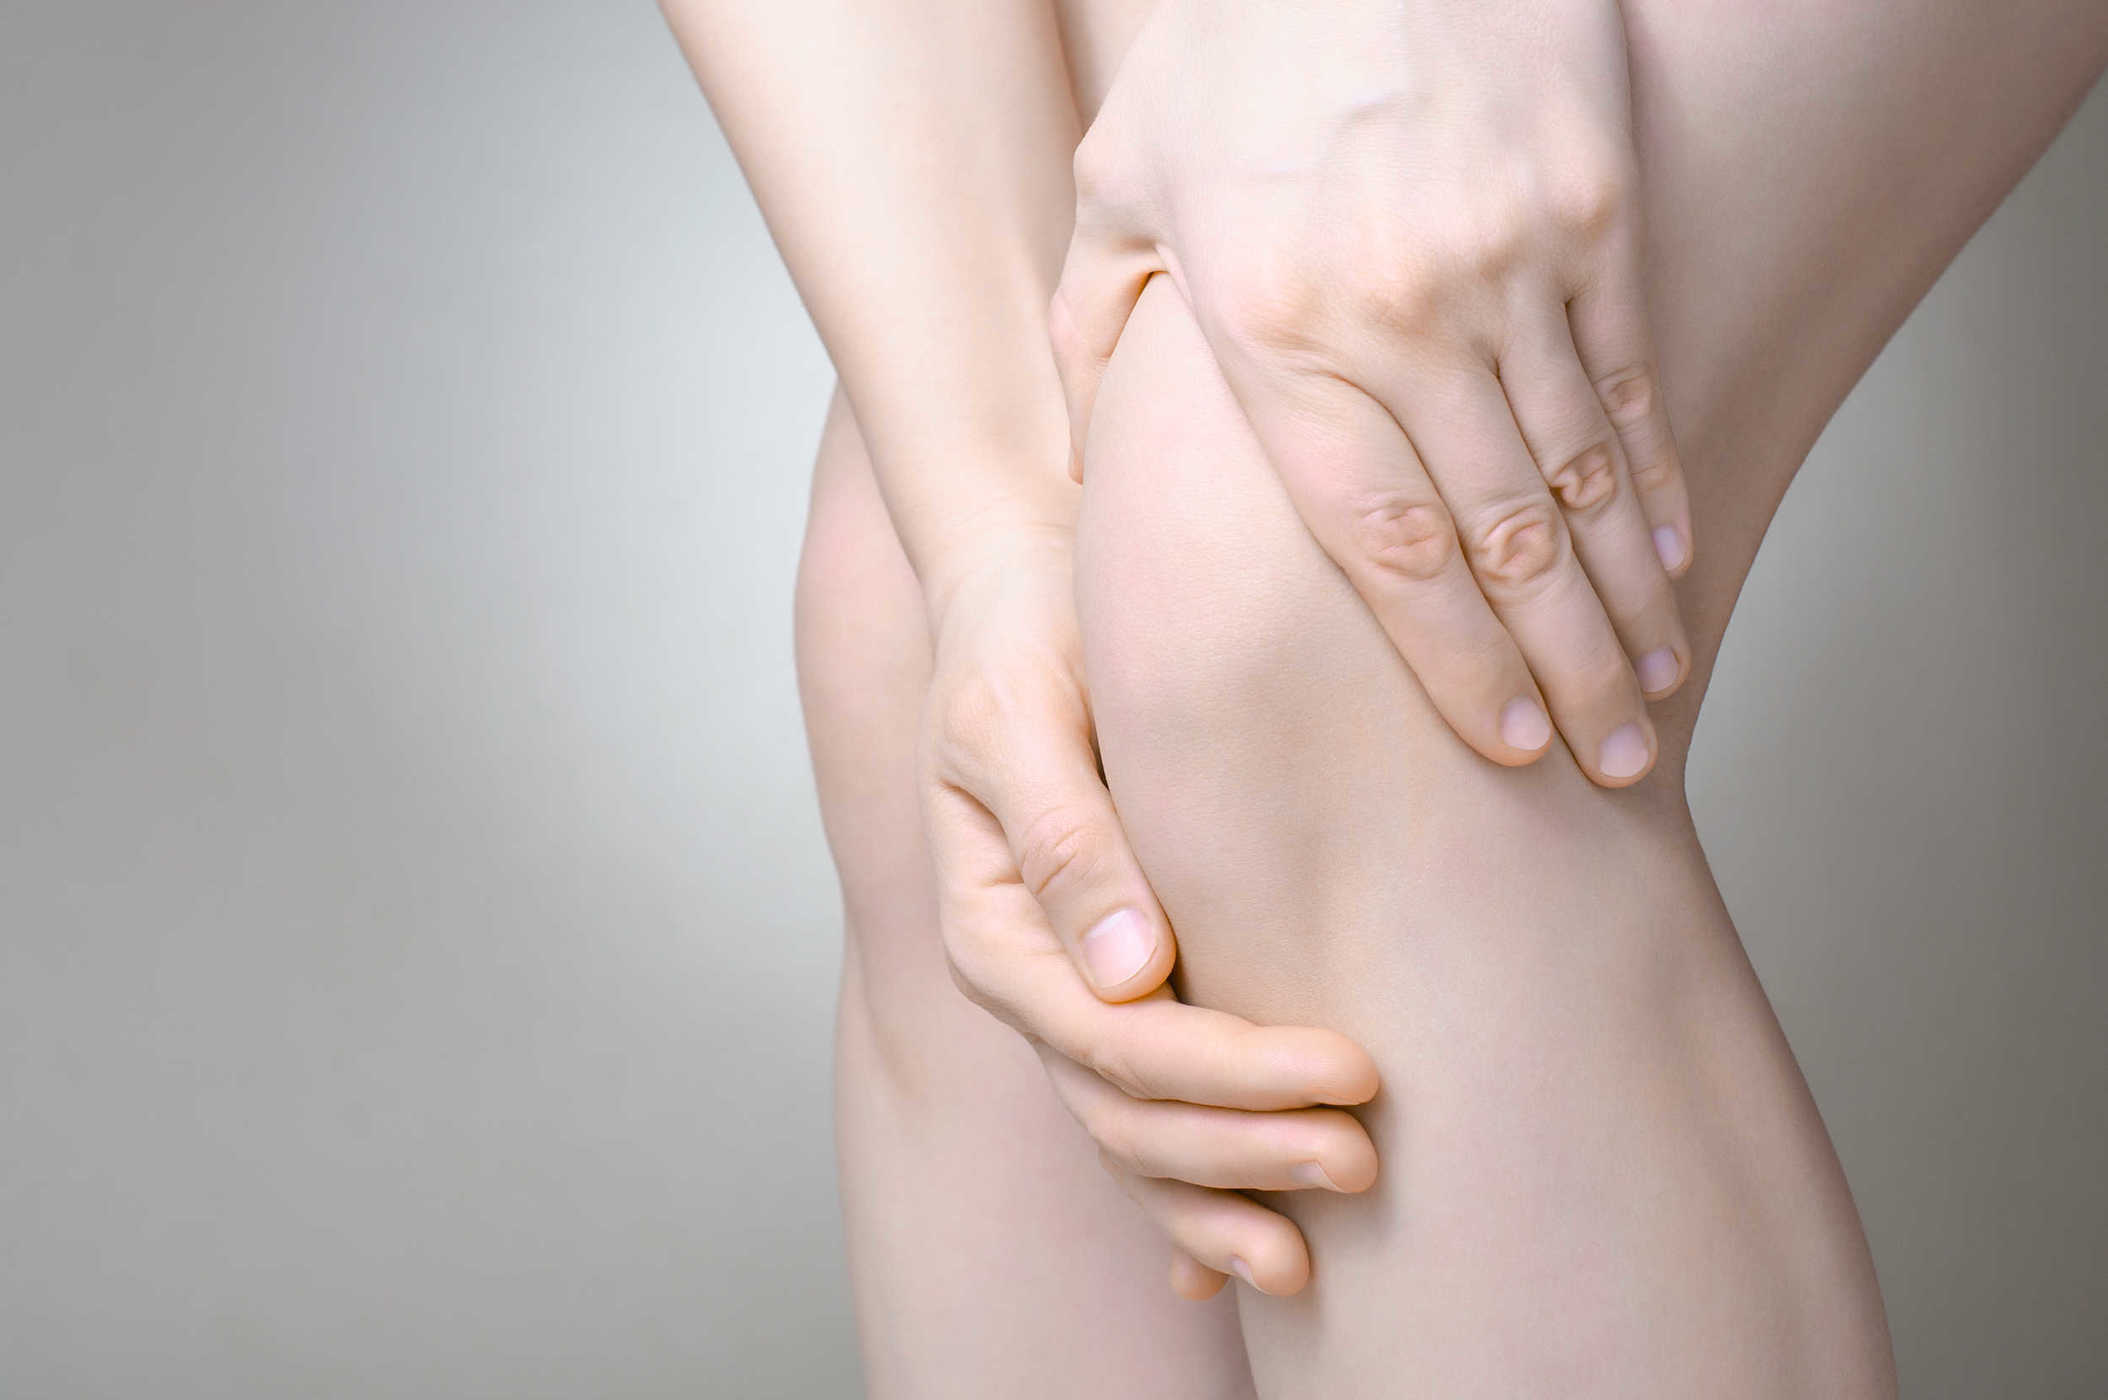 Različite vrste bolesti koje mogu utjecati na zglobove i tetive